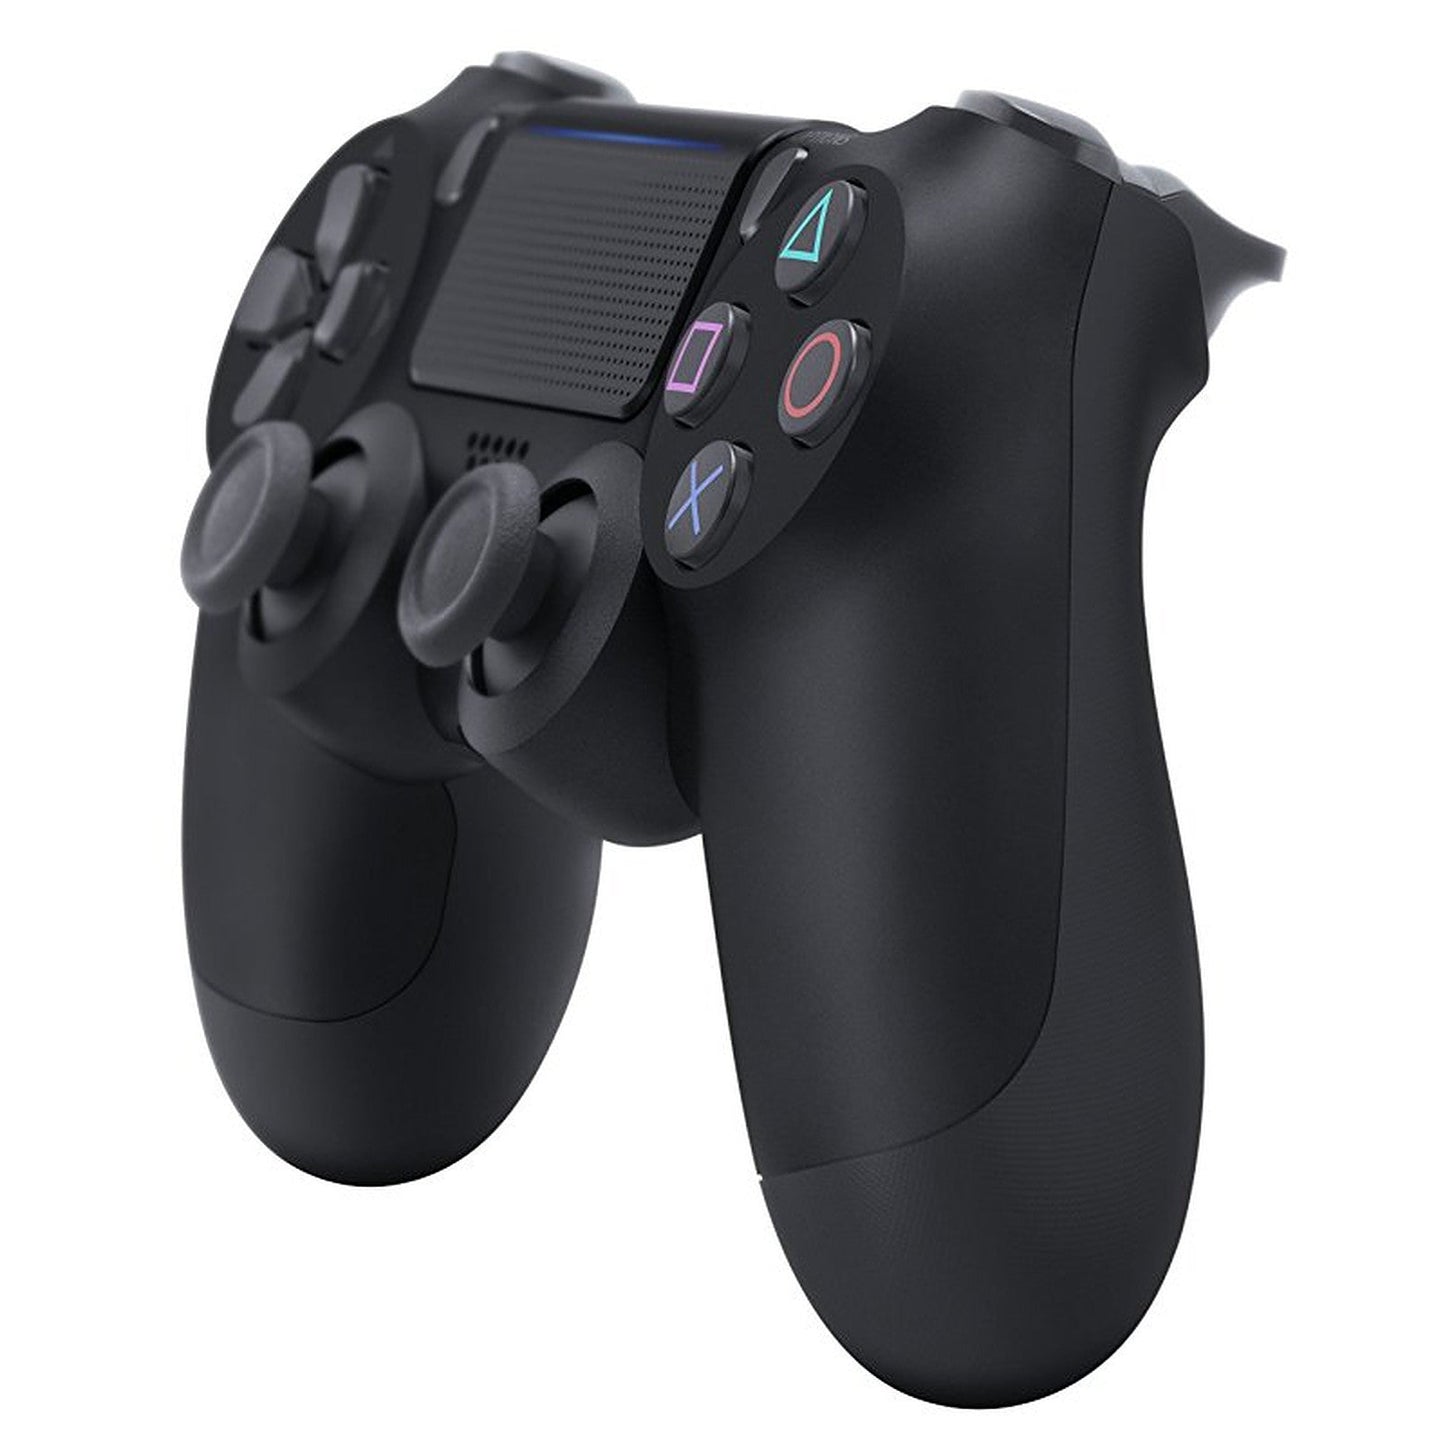 Manette PS4 DualShock V2 Noir ( Sans Boite )